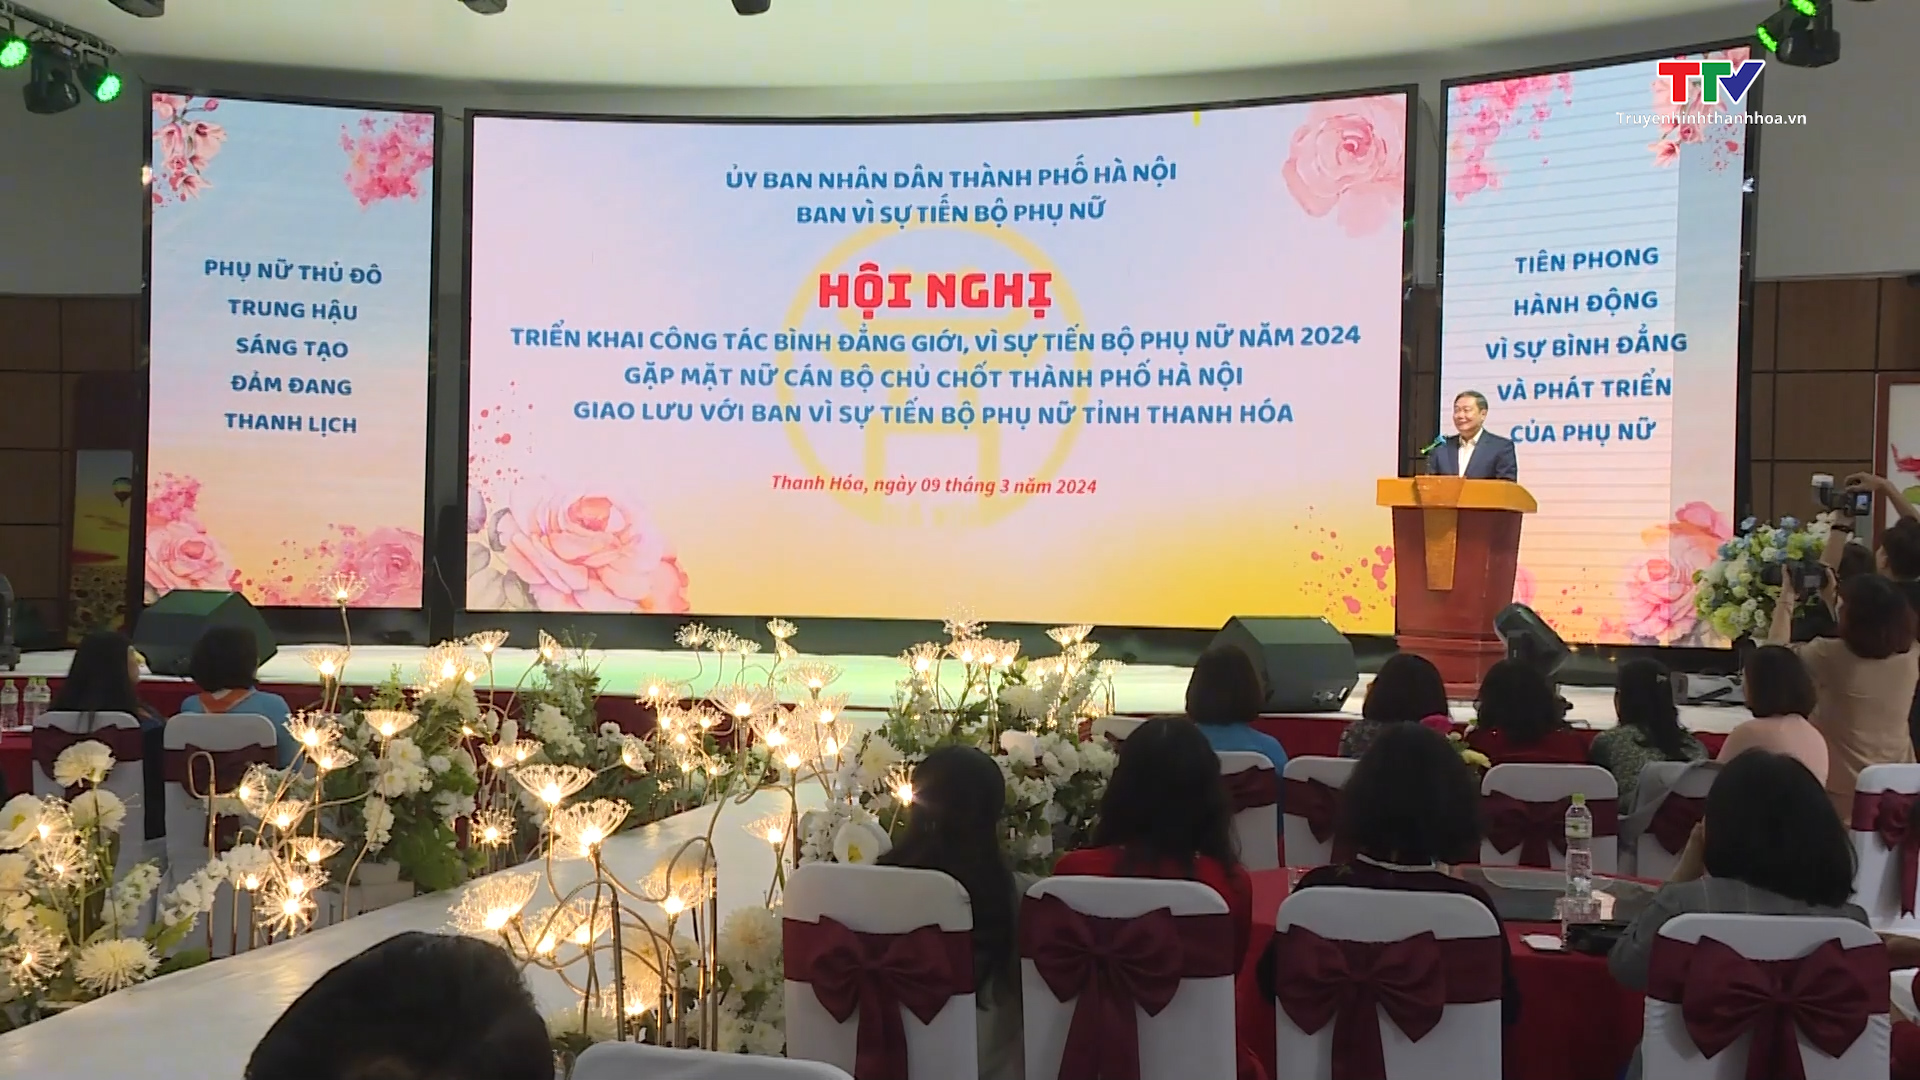 Ban vì sự tiến bộ phụ nữ thành phố Hà Nội và tỉnh Thanh Hóa triển khai công tác bình đẳng giới, vì sự tiến bộ phụ nữ- Ảnh 2.